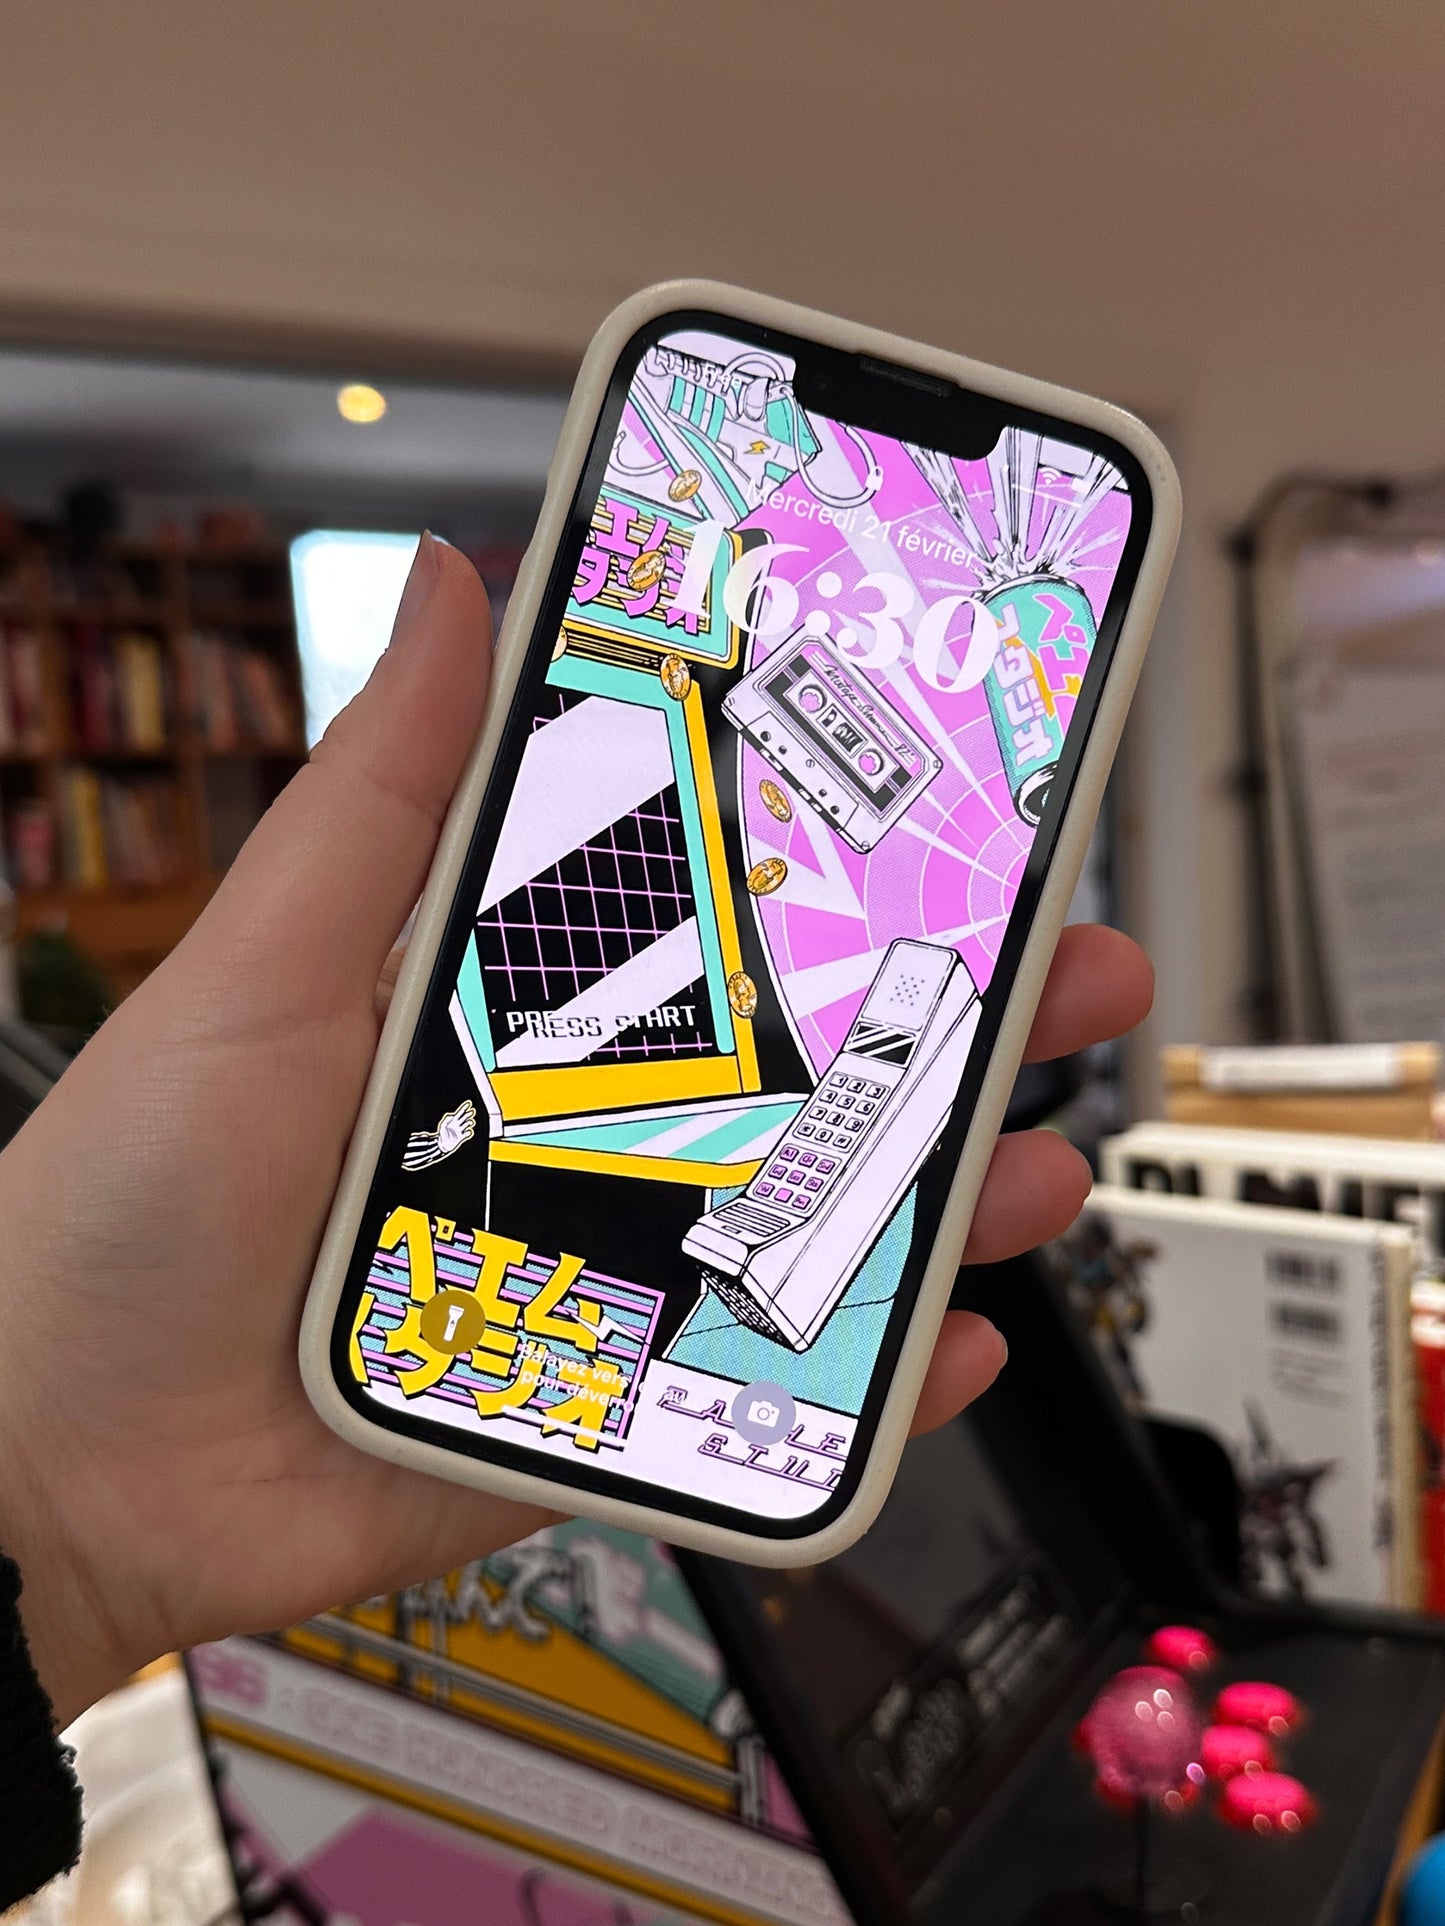 Phone wallpaper - Arcade Machine